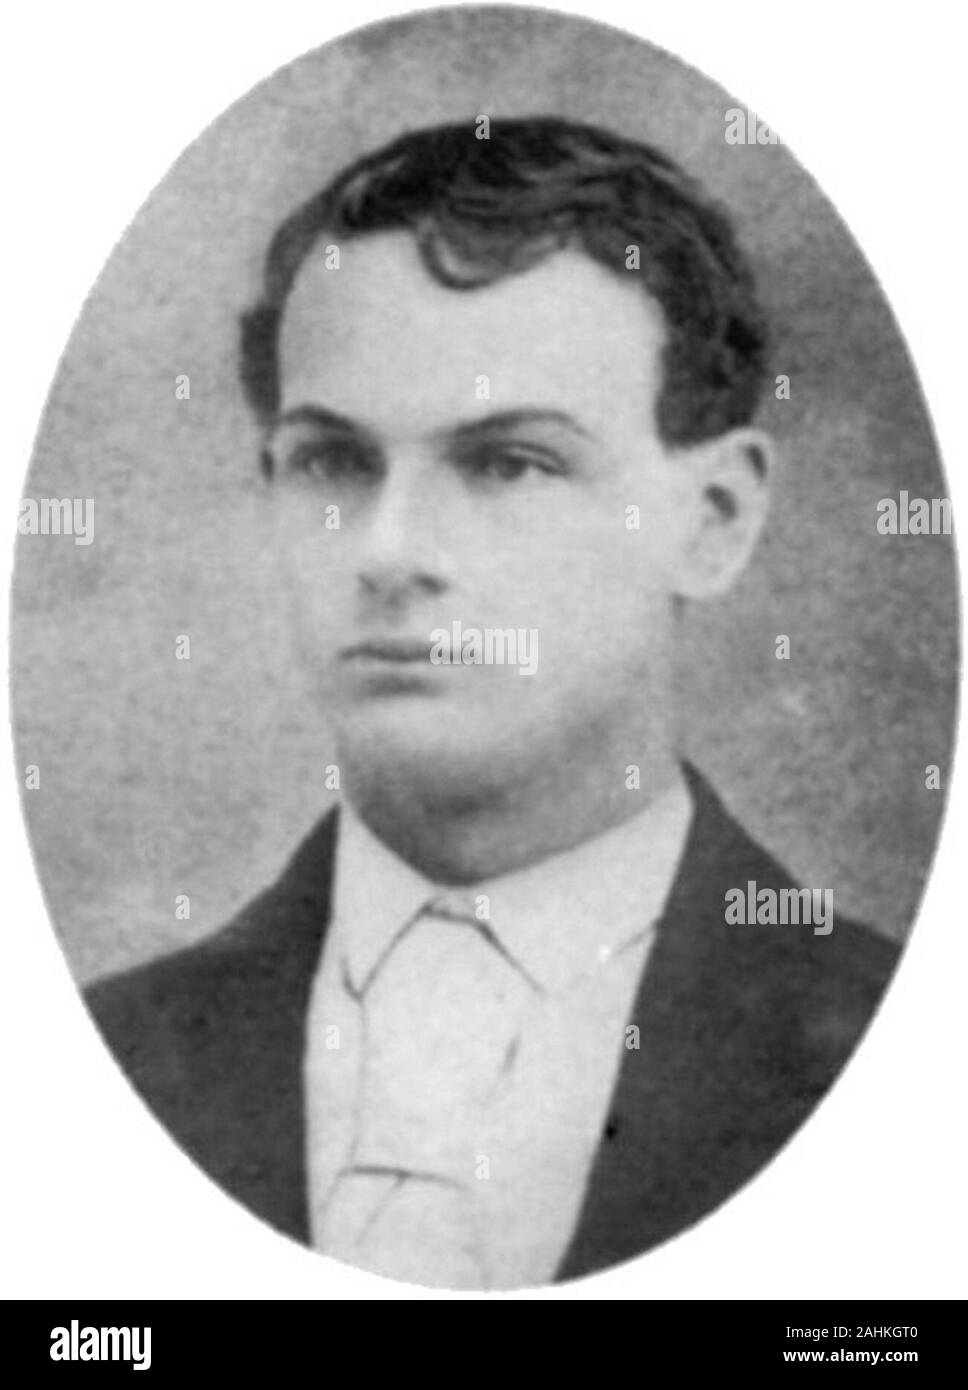 John Harrison Jüngeren (1851-1874), US-amerikanische Outlaw, der Bruder von Cole, Jim und Bob. Er war kurzzeitig Mitglied der James - Jüngere Bande, eine Bande von Gesetzlosen, die auch die berüchtigten Jesse James enthalten. Stockfoto